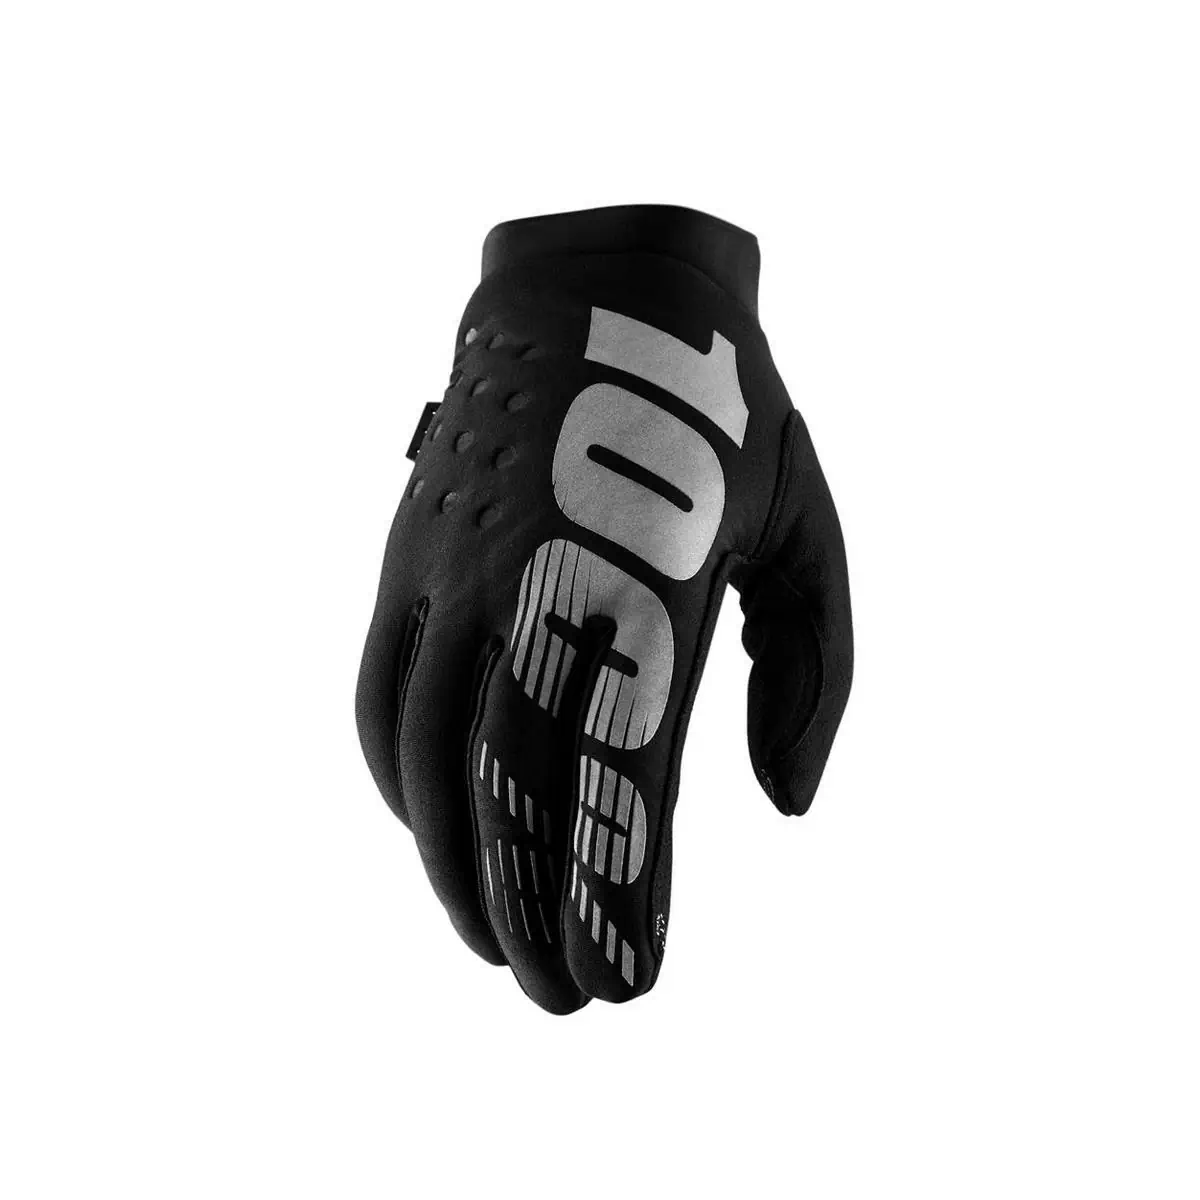 Winter gloves brisker black size XL - image